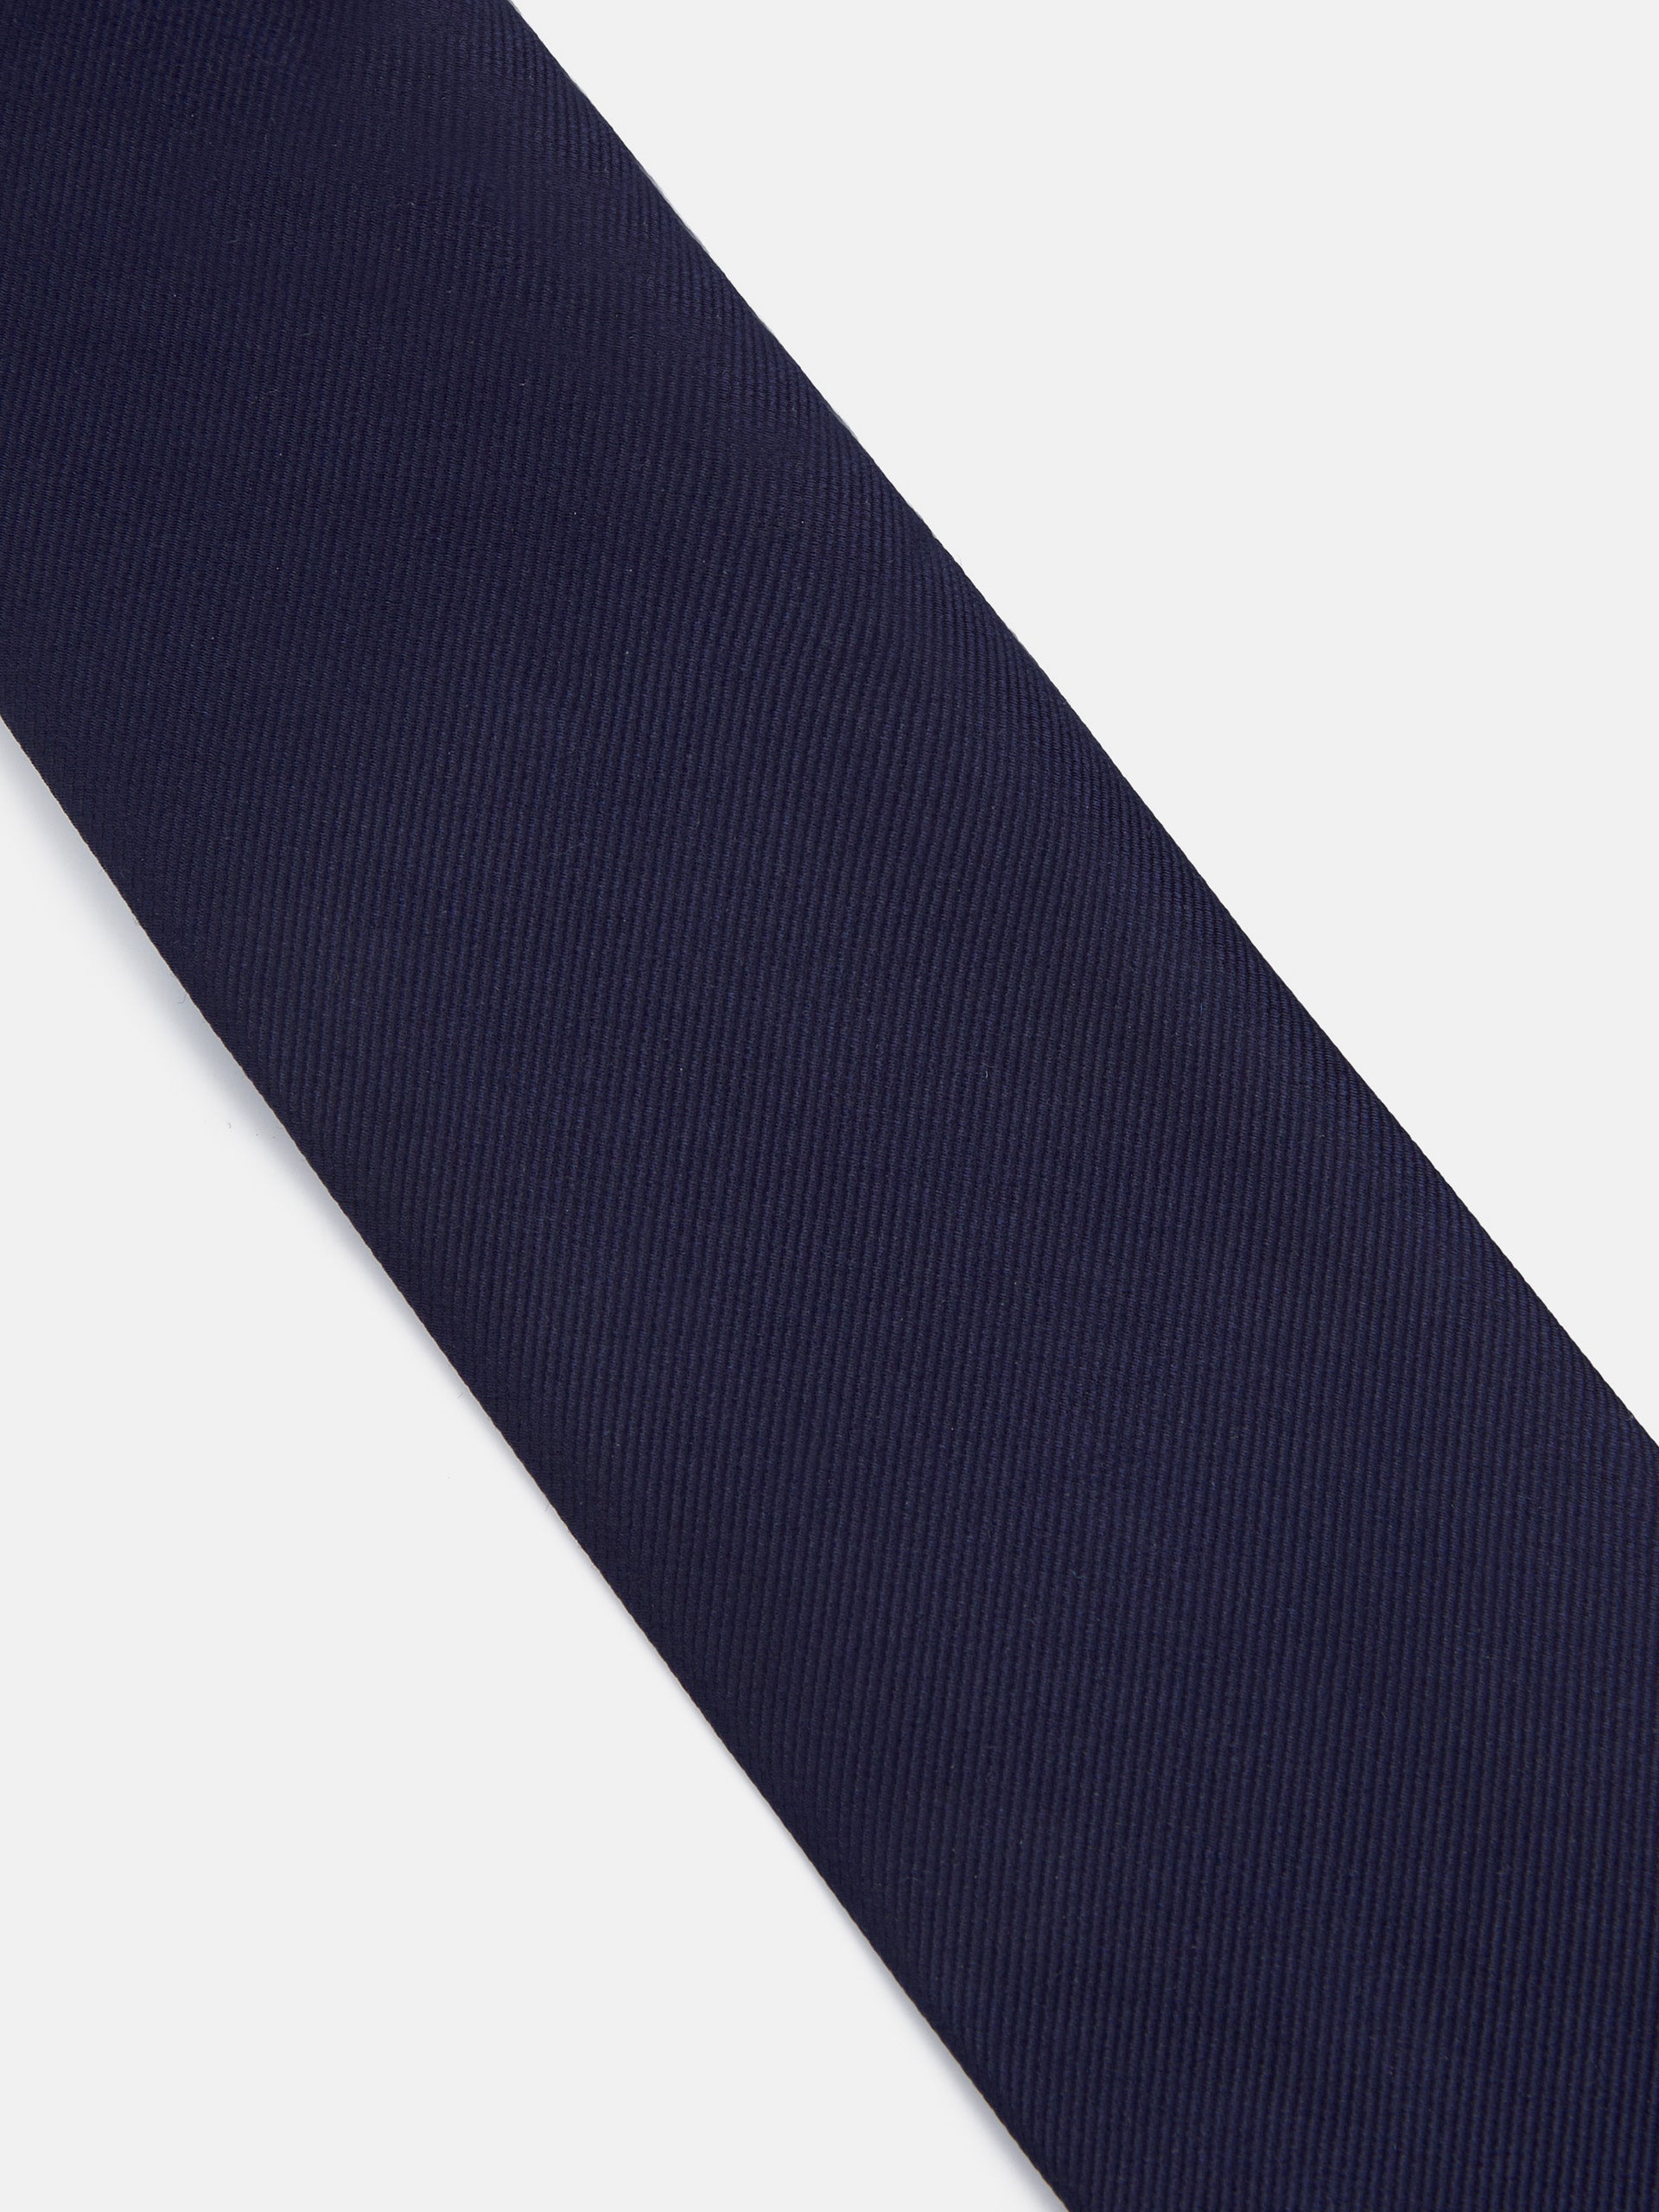 Cravate silbon unie bleu marine